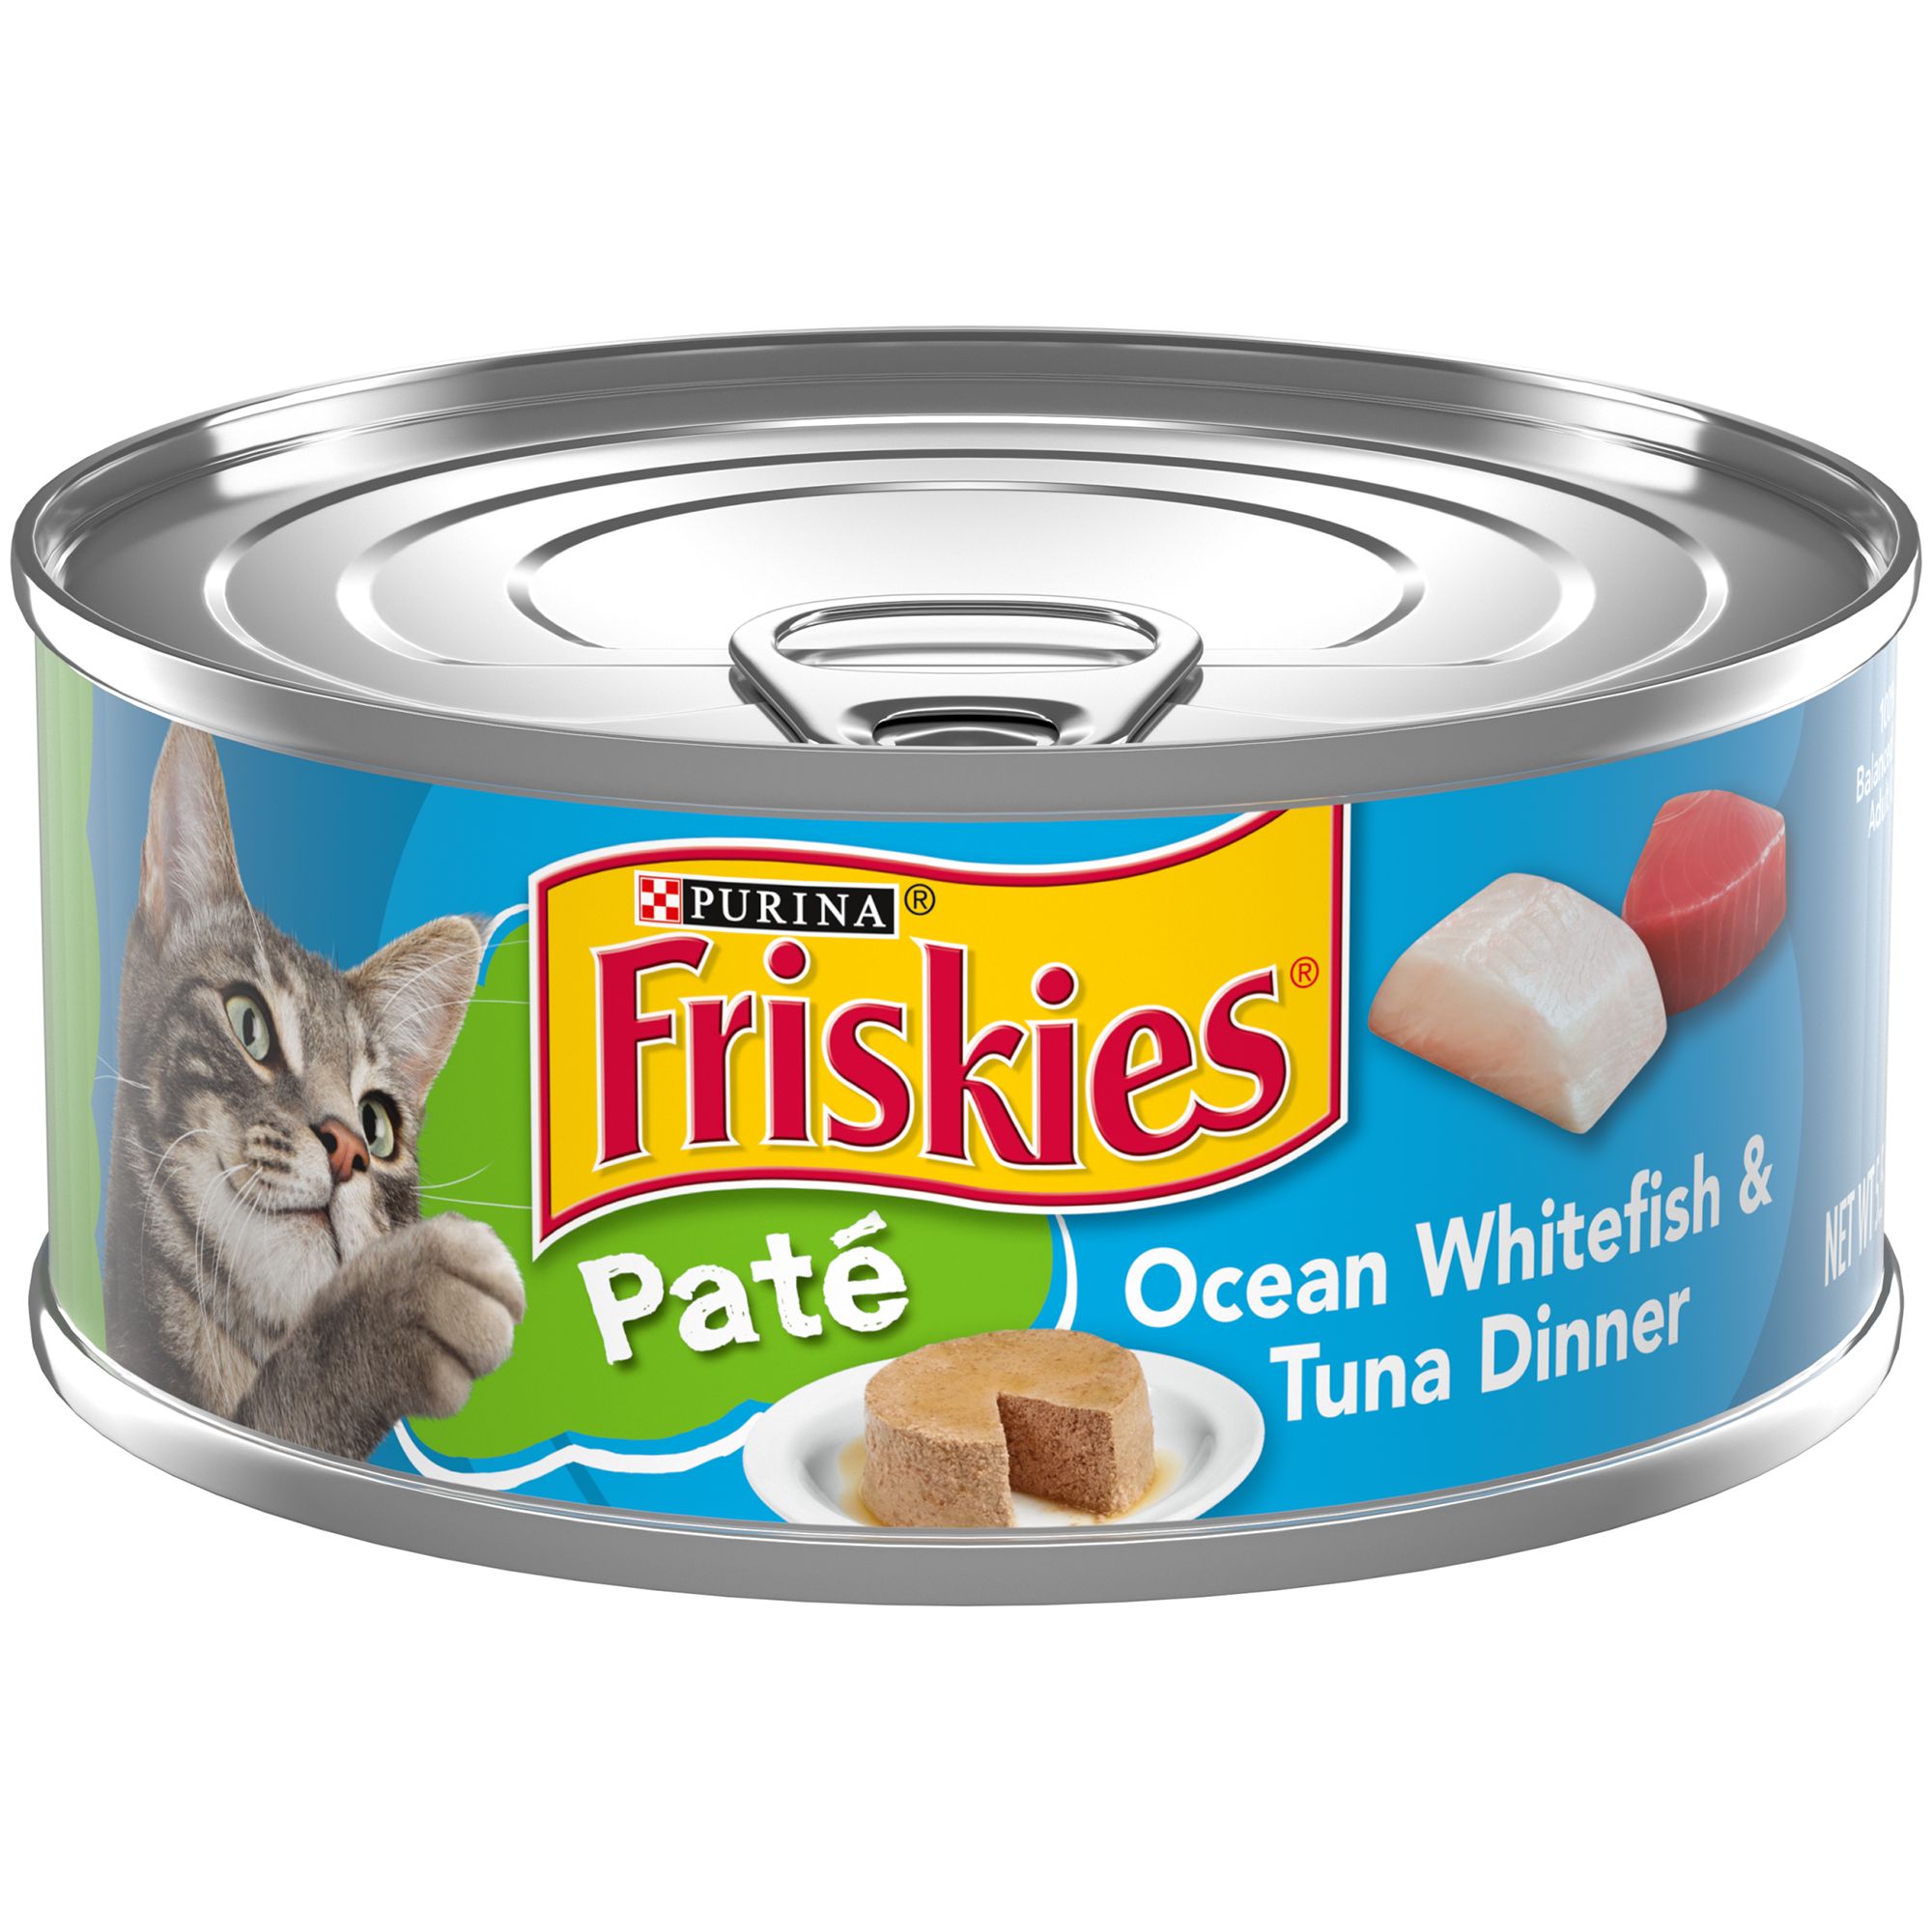 Friskies® Paté Cat Food for Adult Cats 